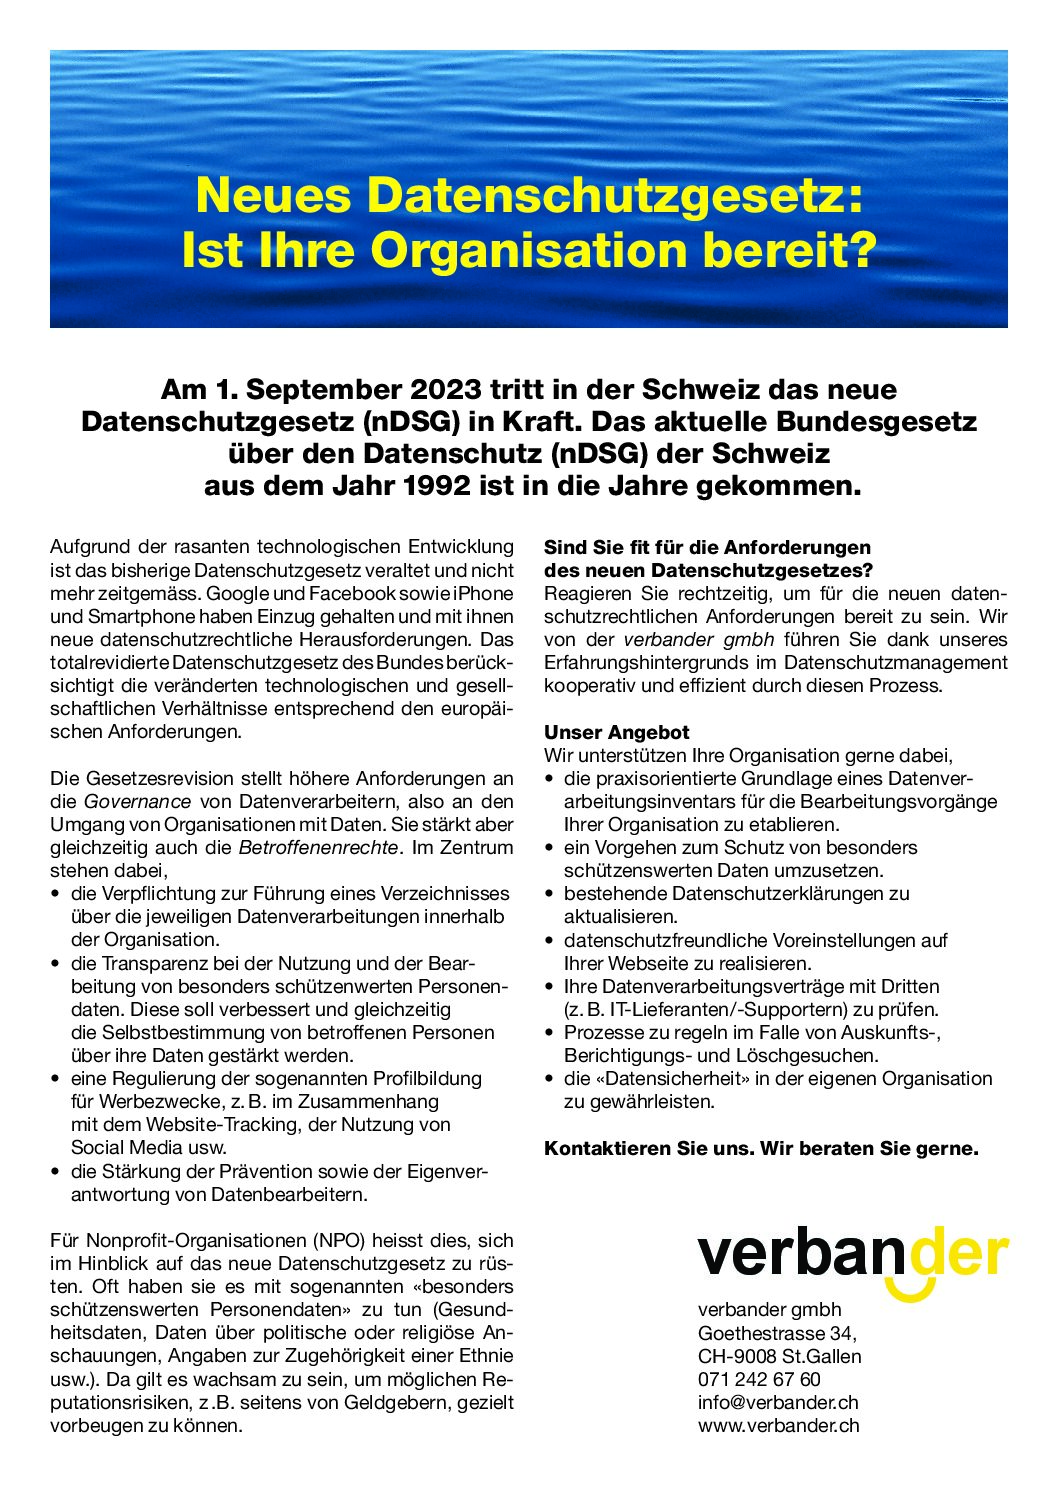 verbander-gmbh_Datenschutzgesetz.pdf